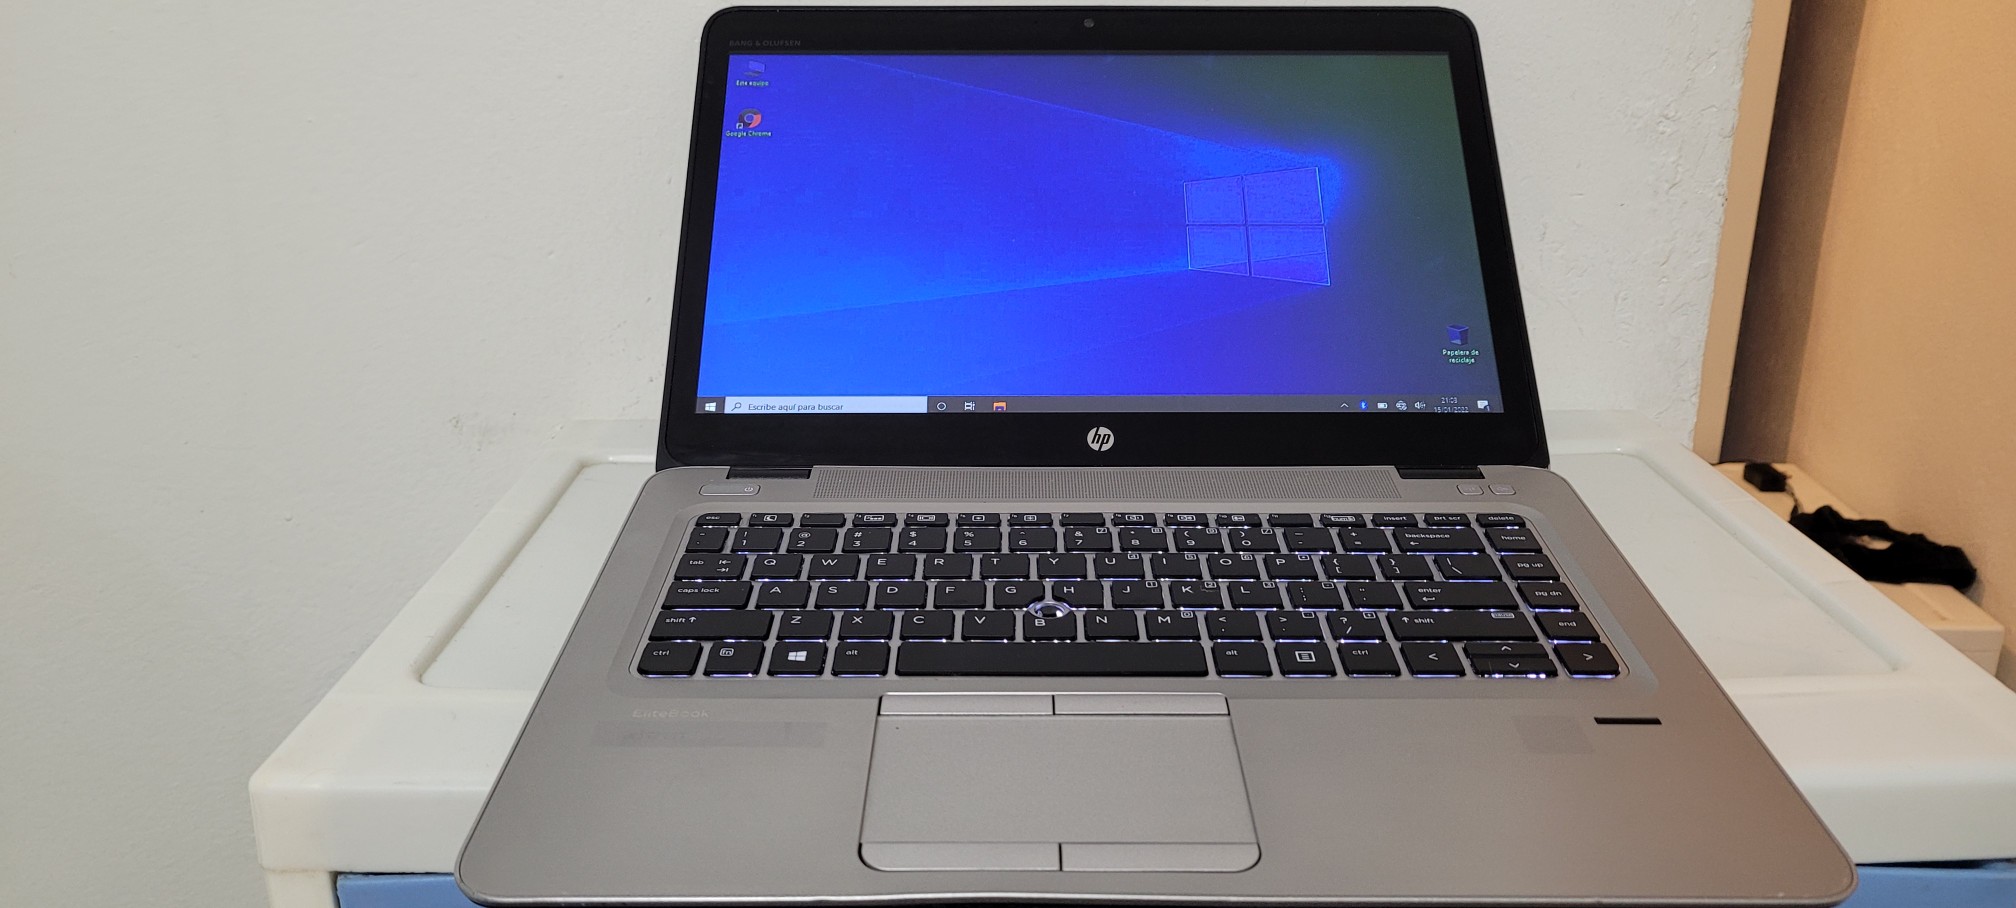 computadoras y laptops - Laptop hp G2 14 Pulg Core i5 6ta Gen Ram 8gb ddr4 Disco 500gb hdmi Wifi